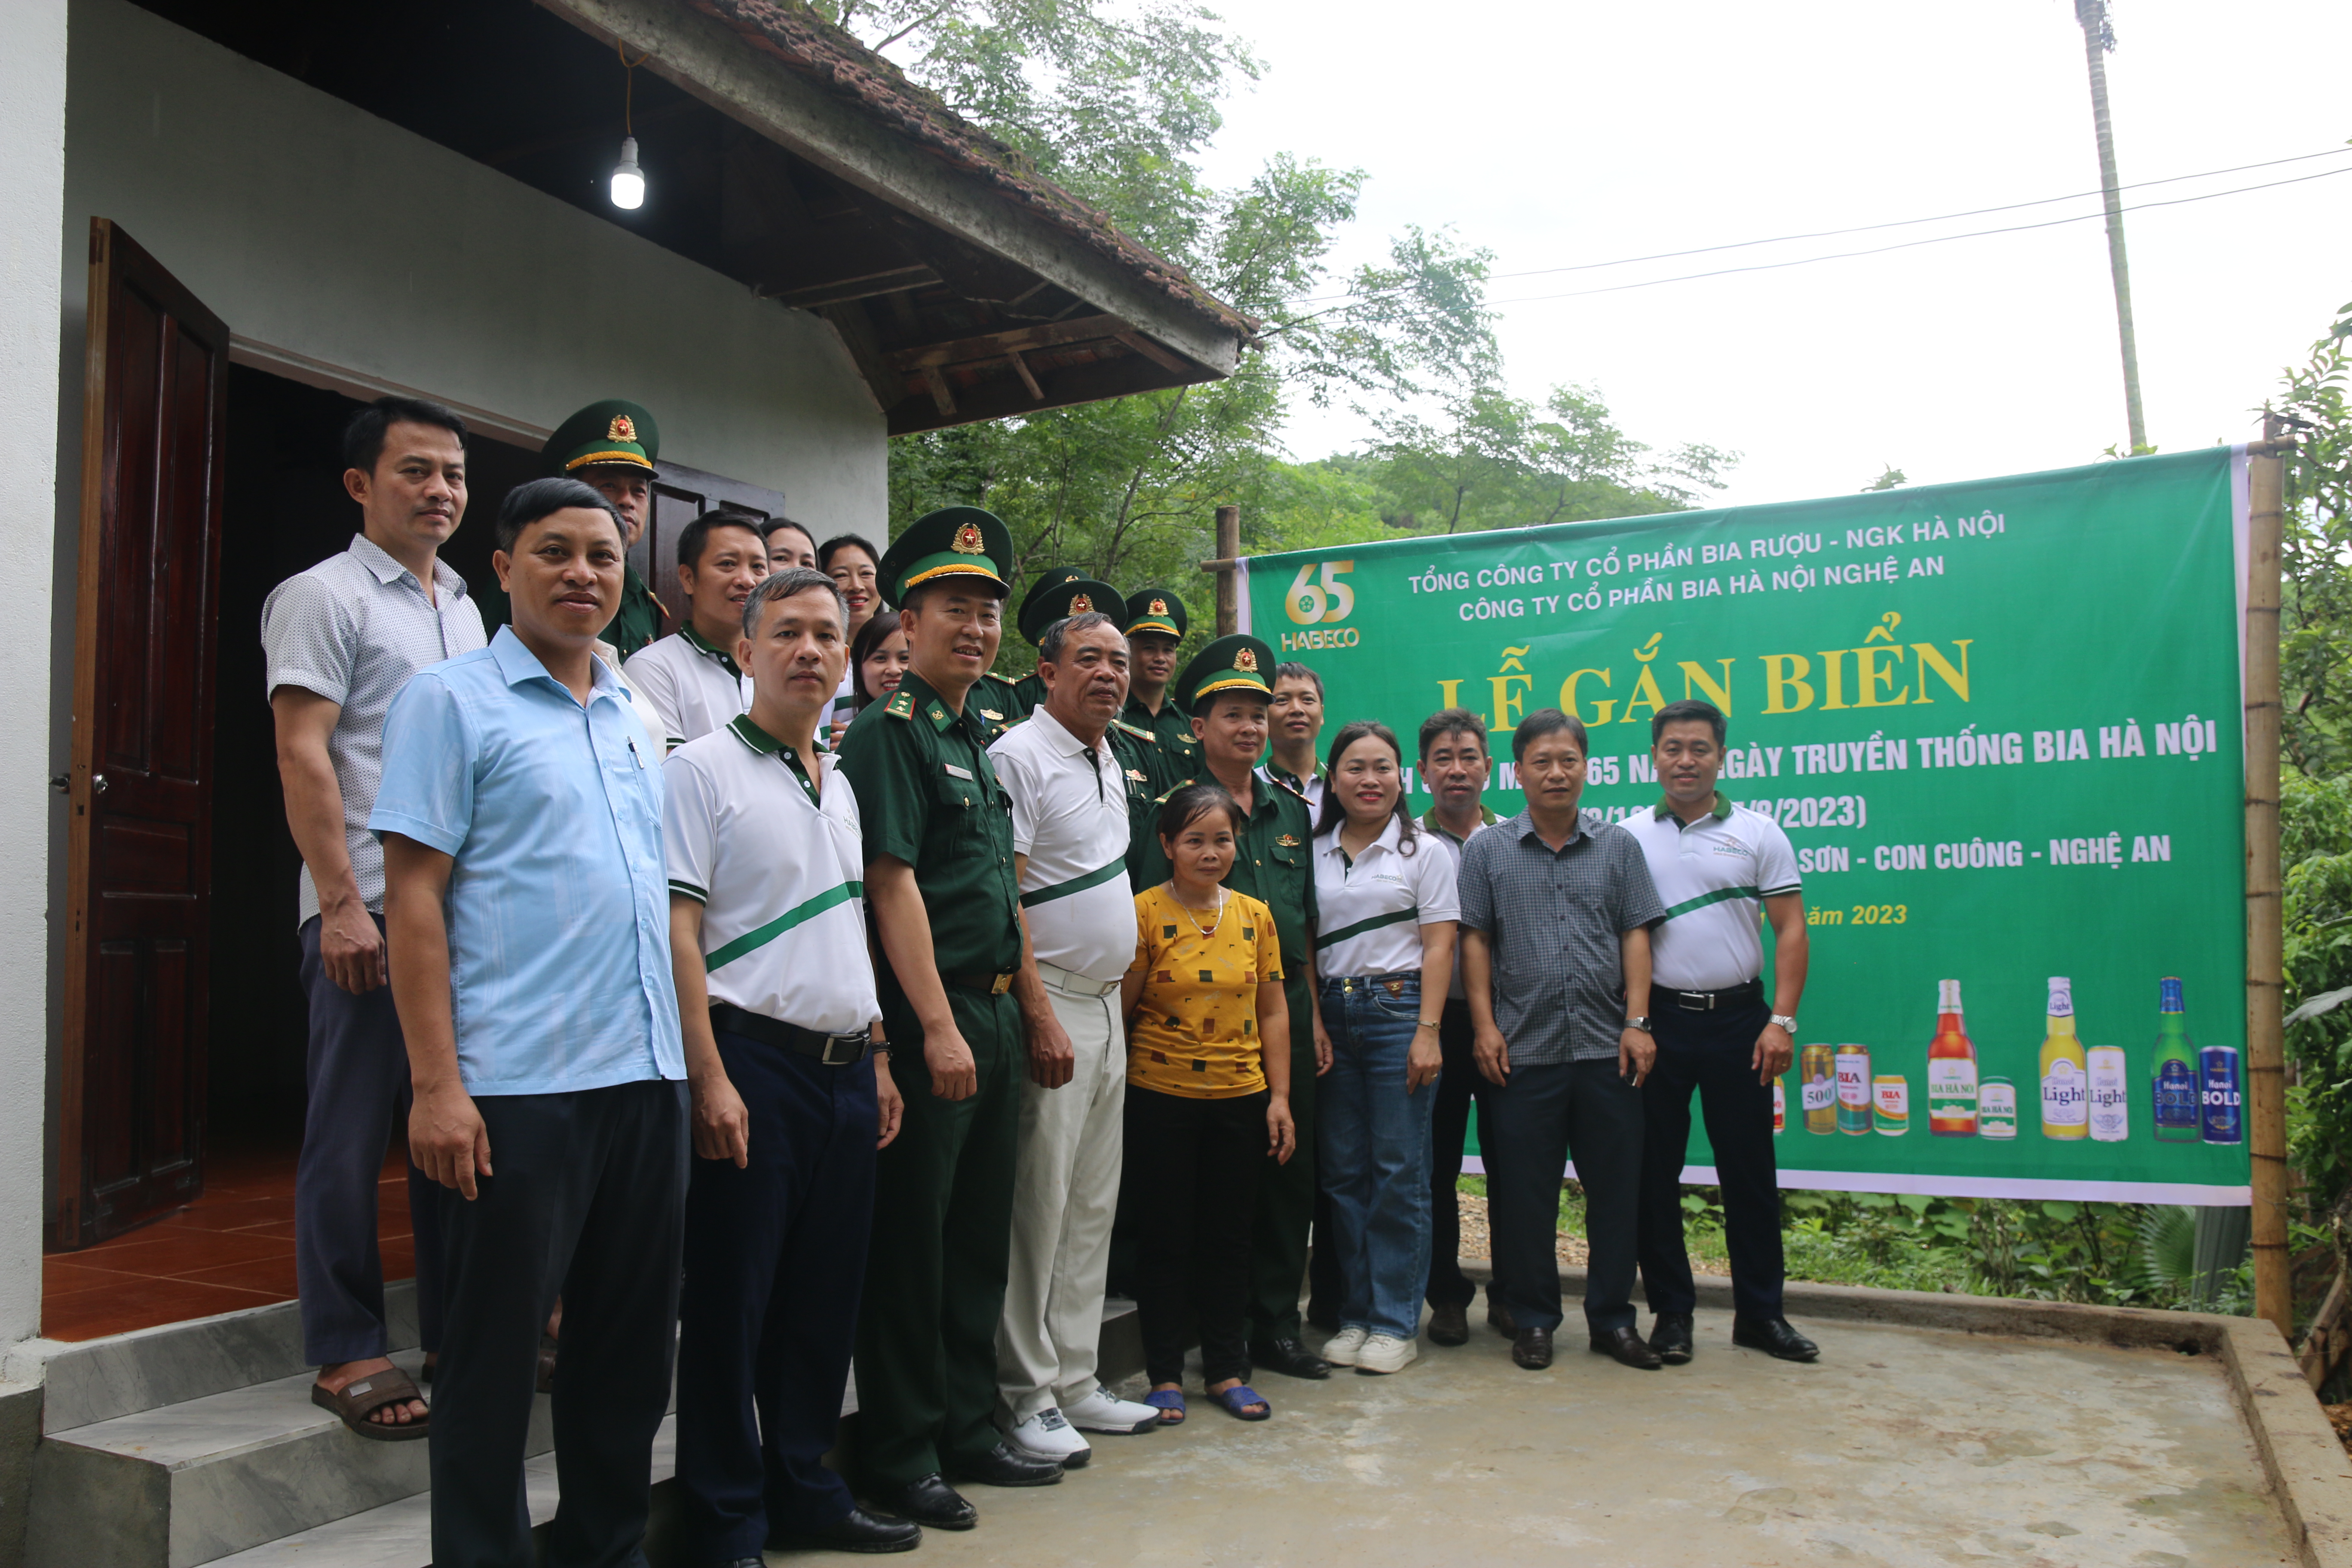 Hướng đến kỷ niệm 65 năm Ngày truyền thống HABECO, Công ty cổ phần Bia Hà Nội - Nghệ An trao tặng 2 nhà Đại đoàn kết